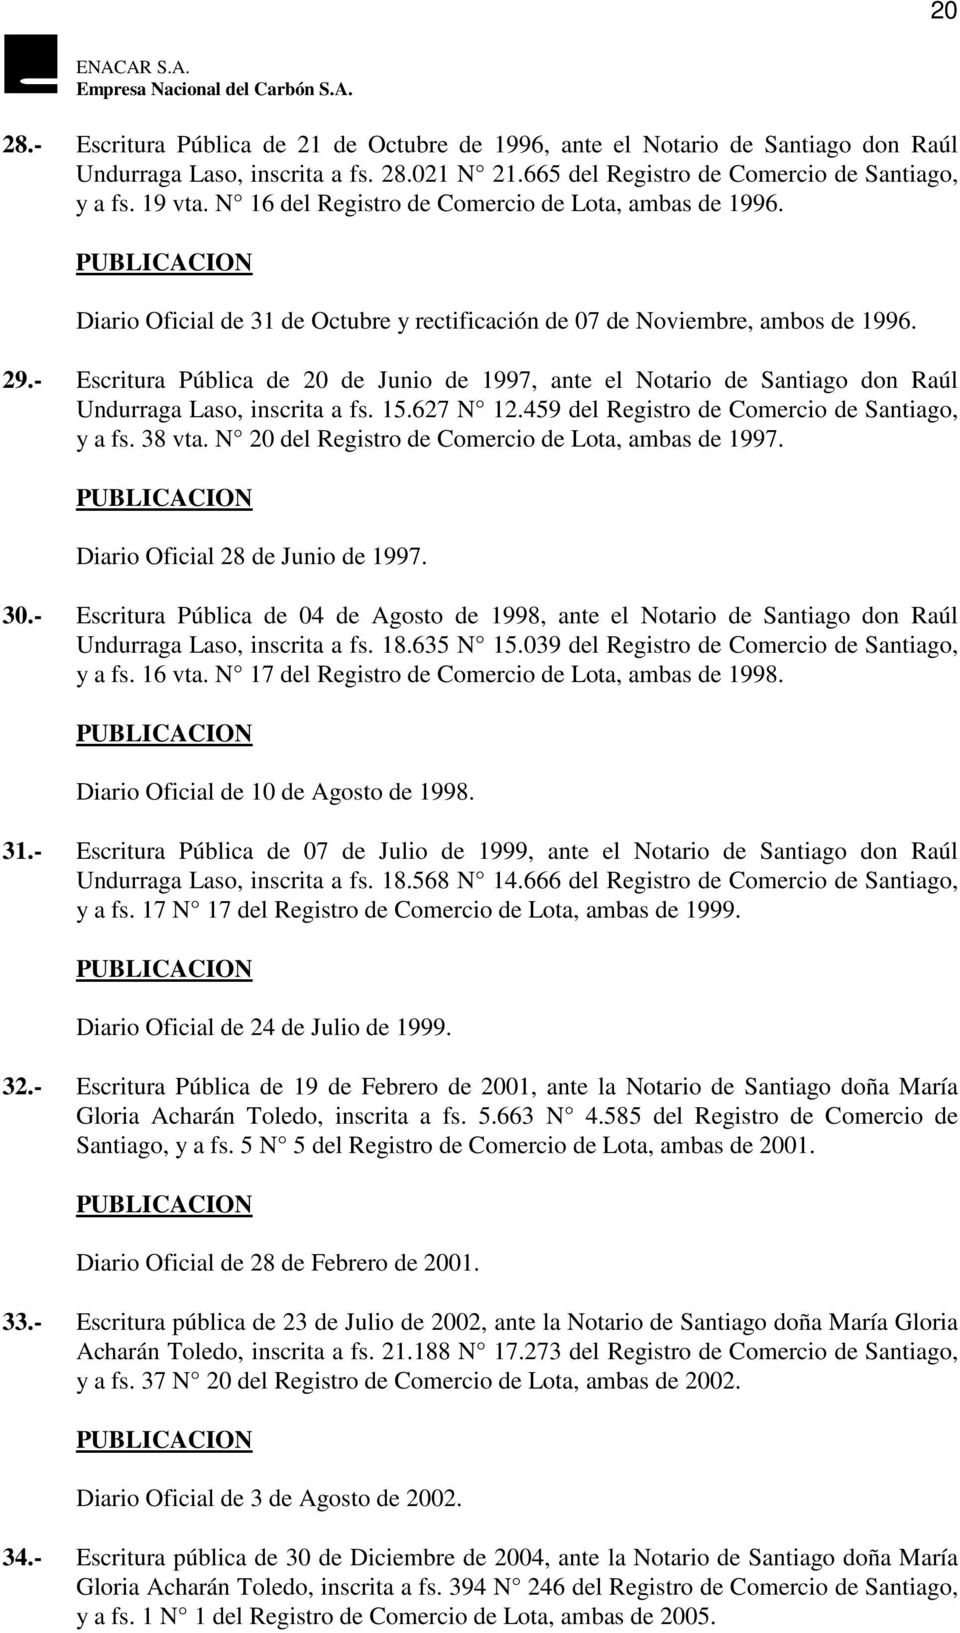 - Escritura Pública de 20 de Junio de 1997, ante el Notario de Santiago don Raúl Undurraga Laso, inscrita a fs. 15.627 N 12.459 del Registro de Comercio de Santiago, y a fs. 38 vta.